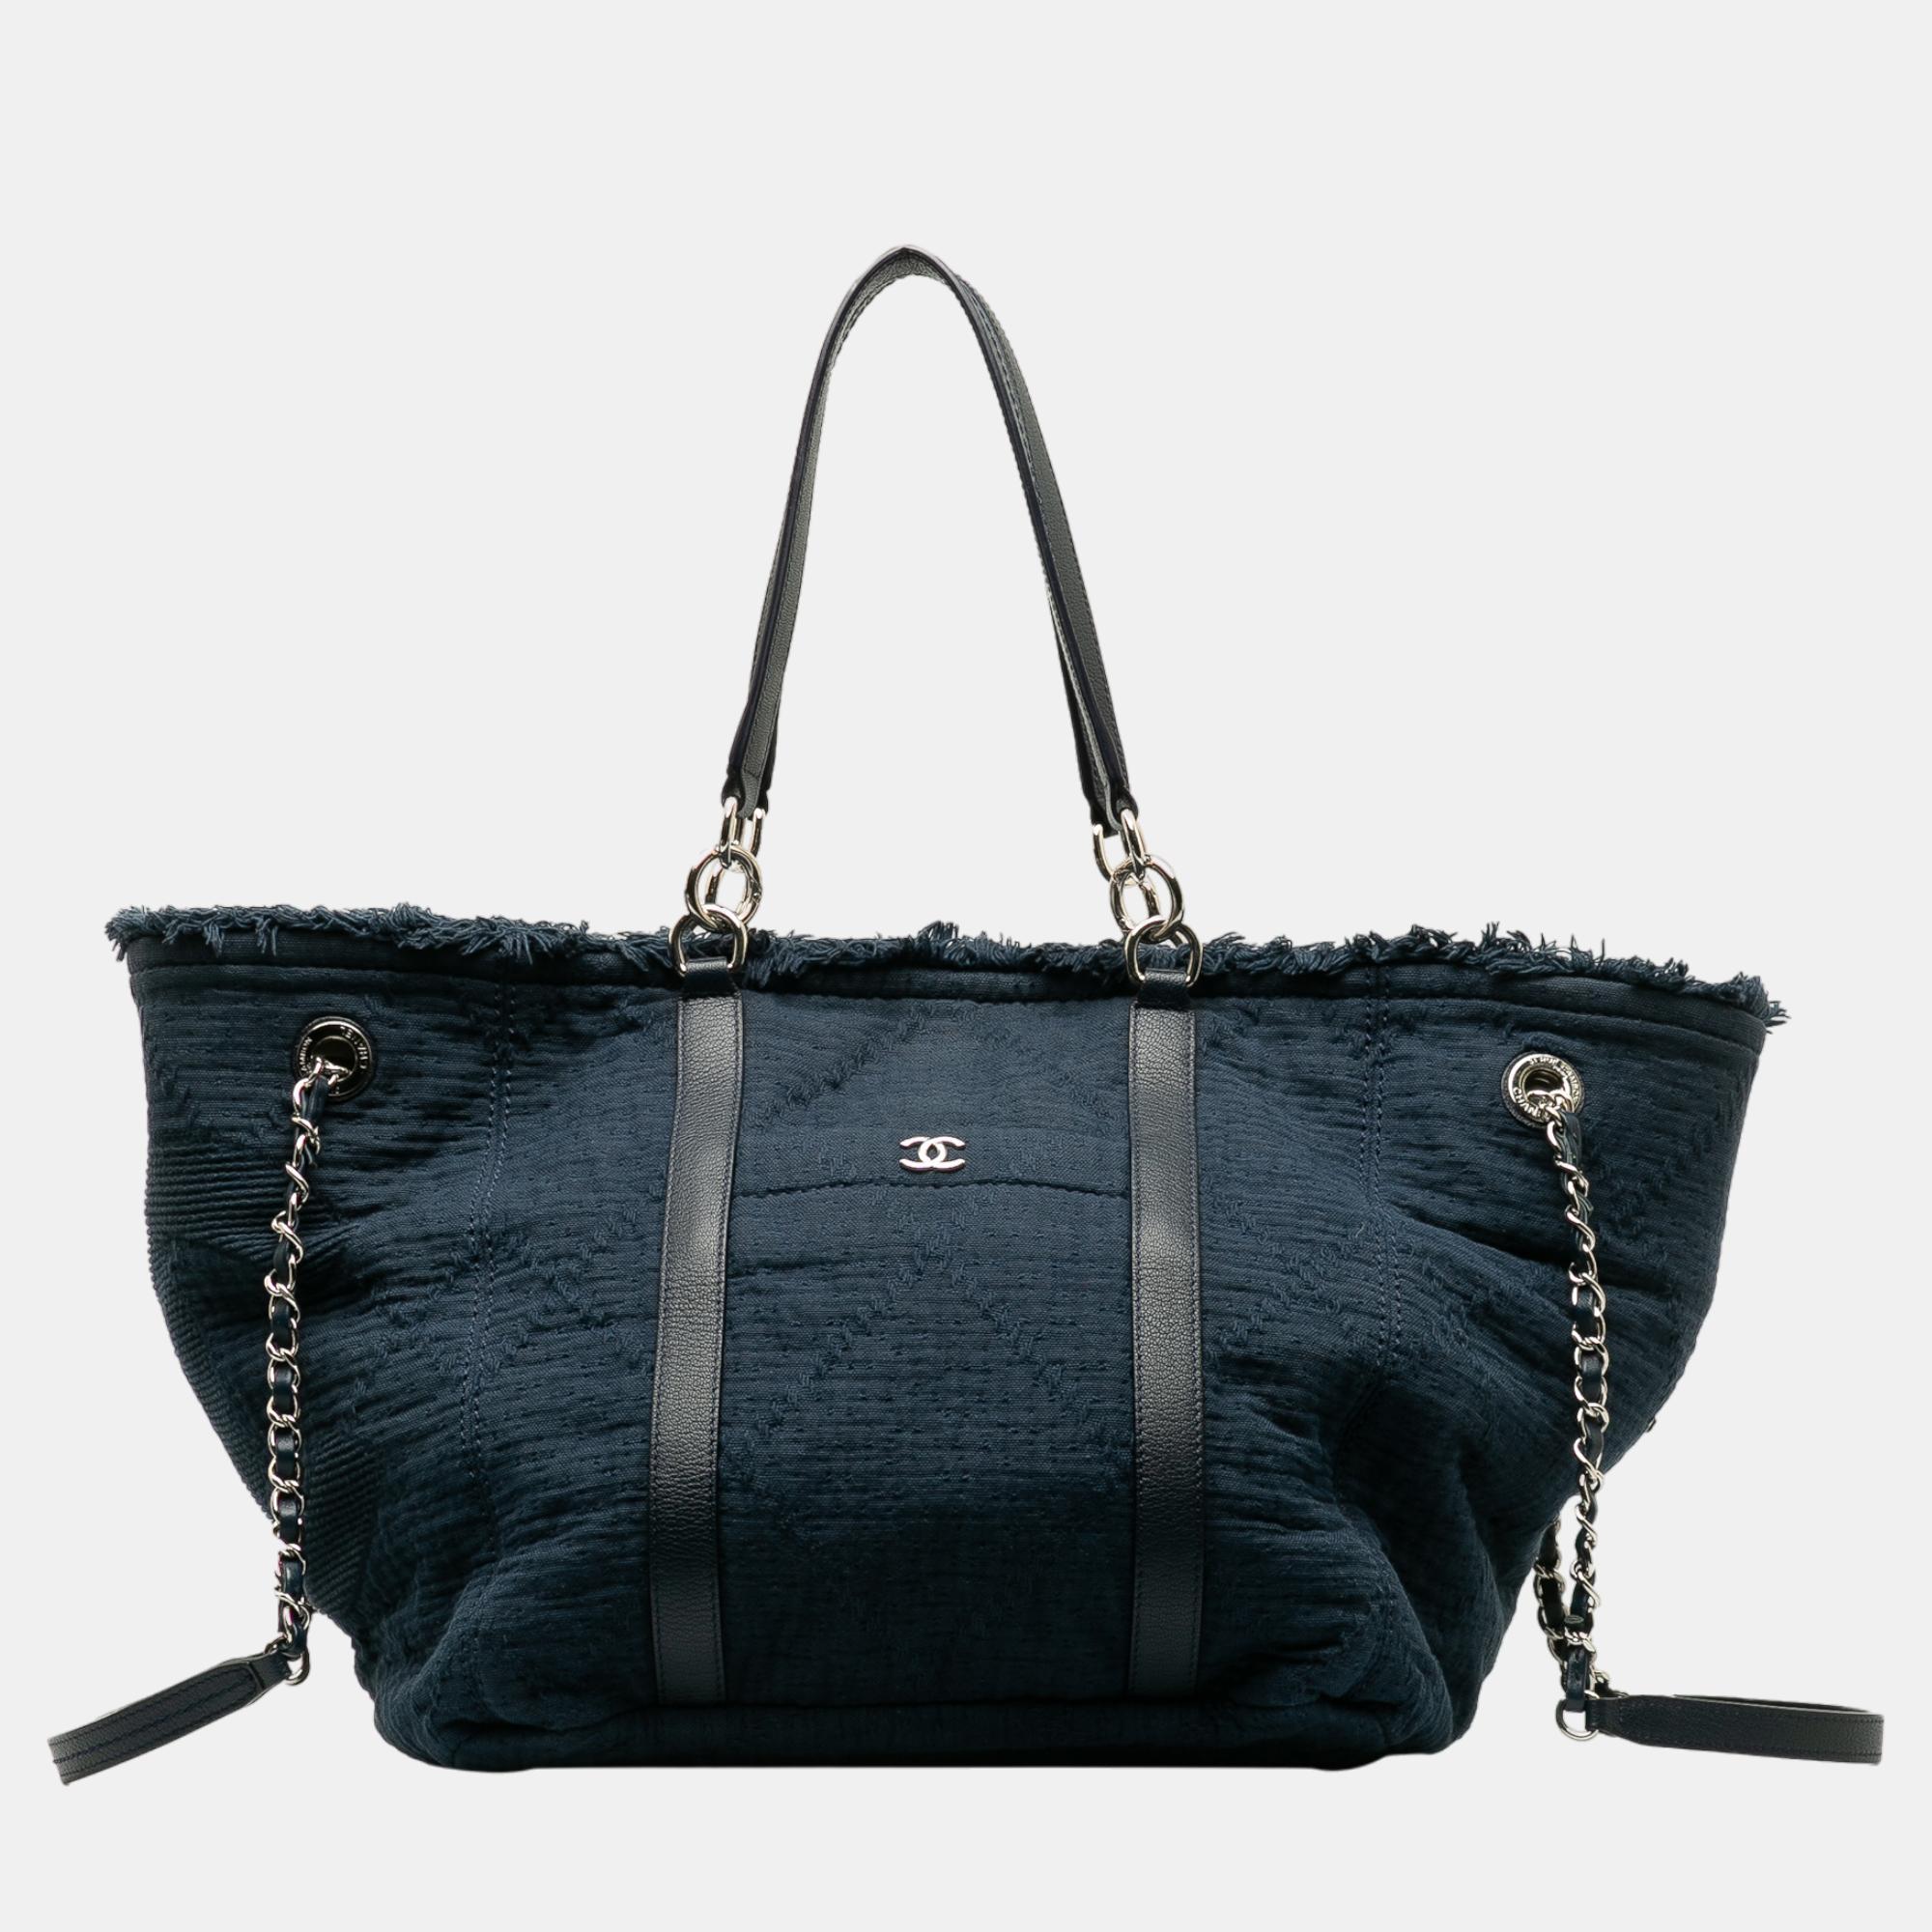 Chanel navy blue large cc double face deauville satchel